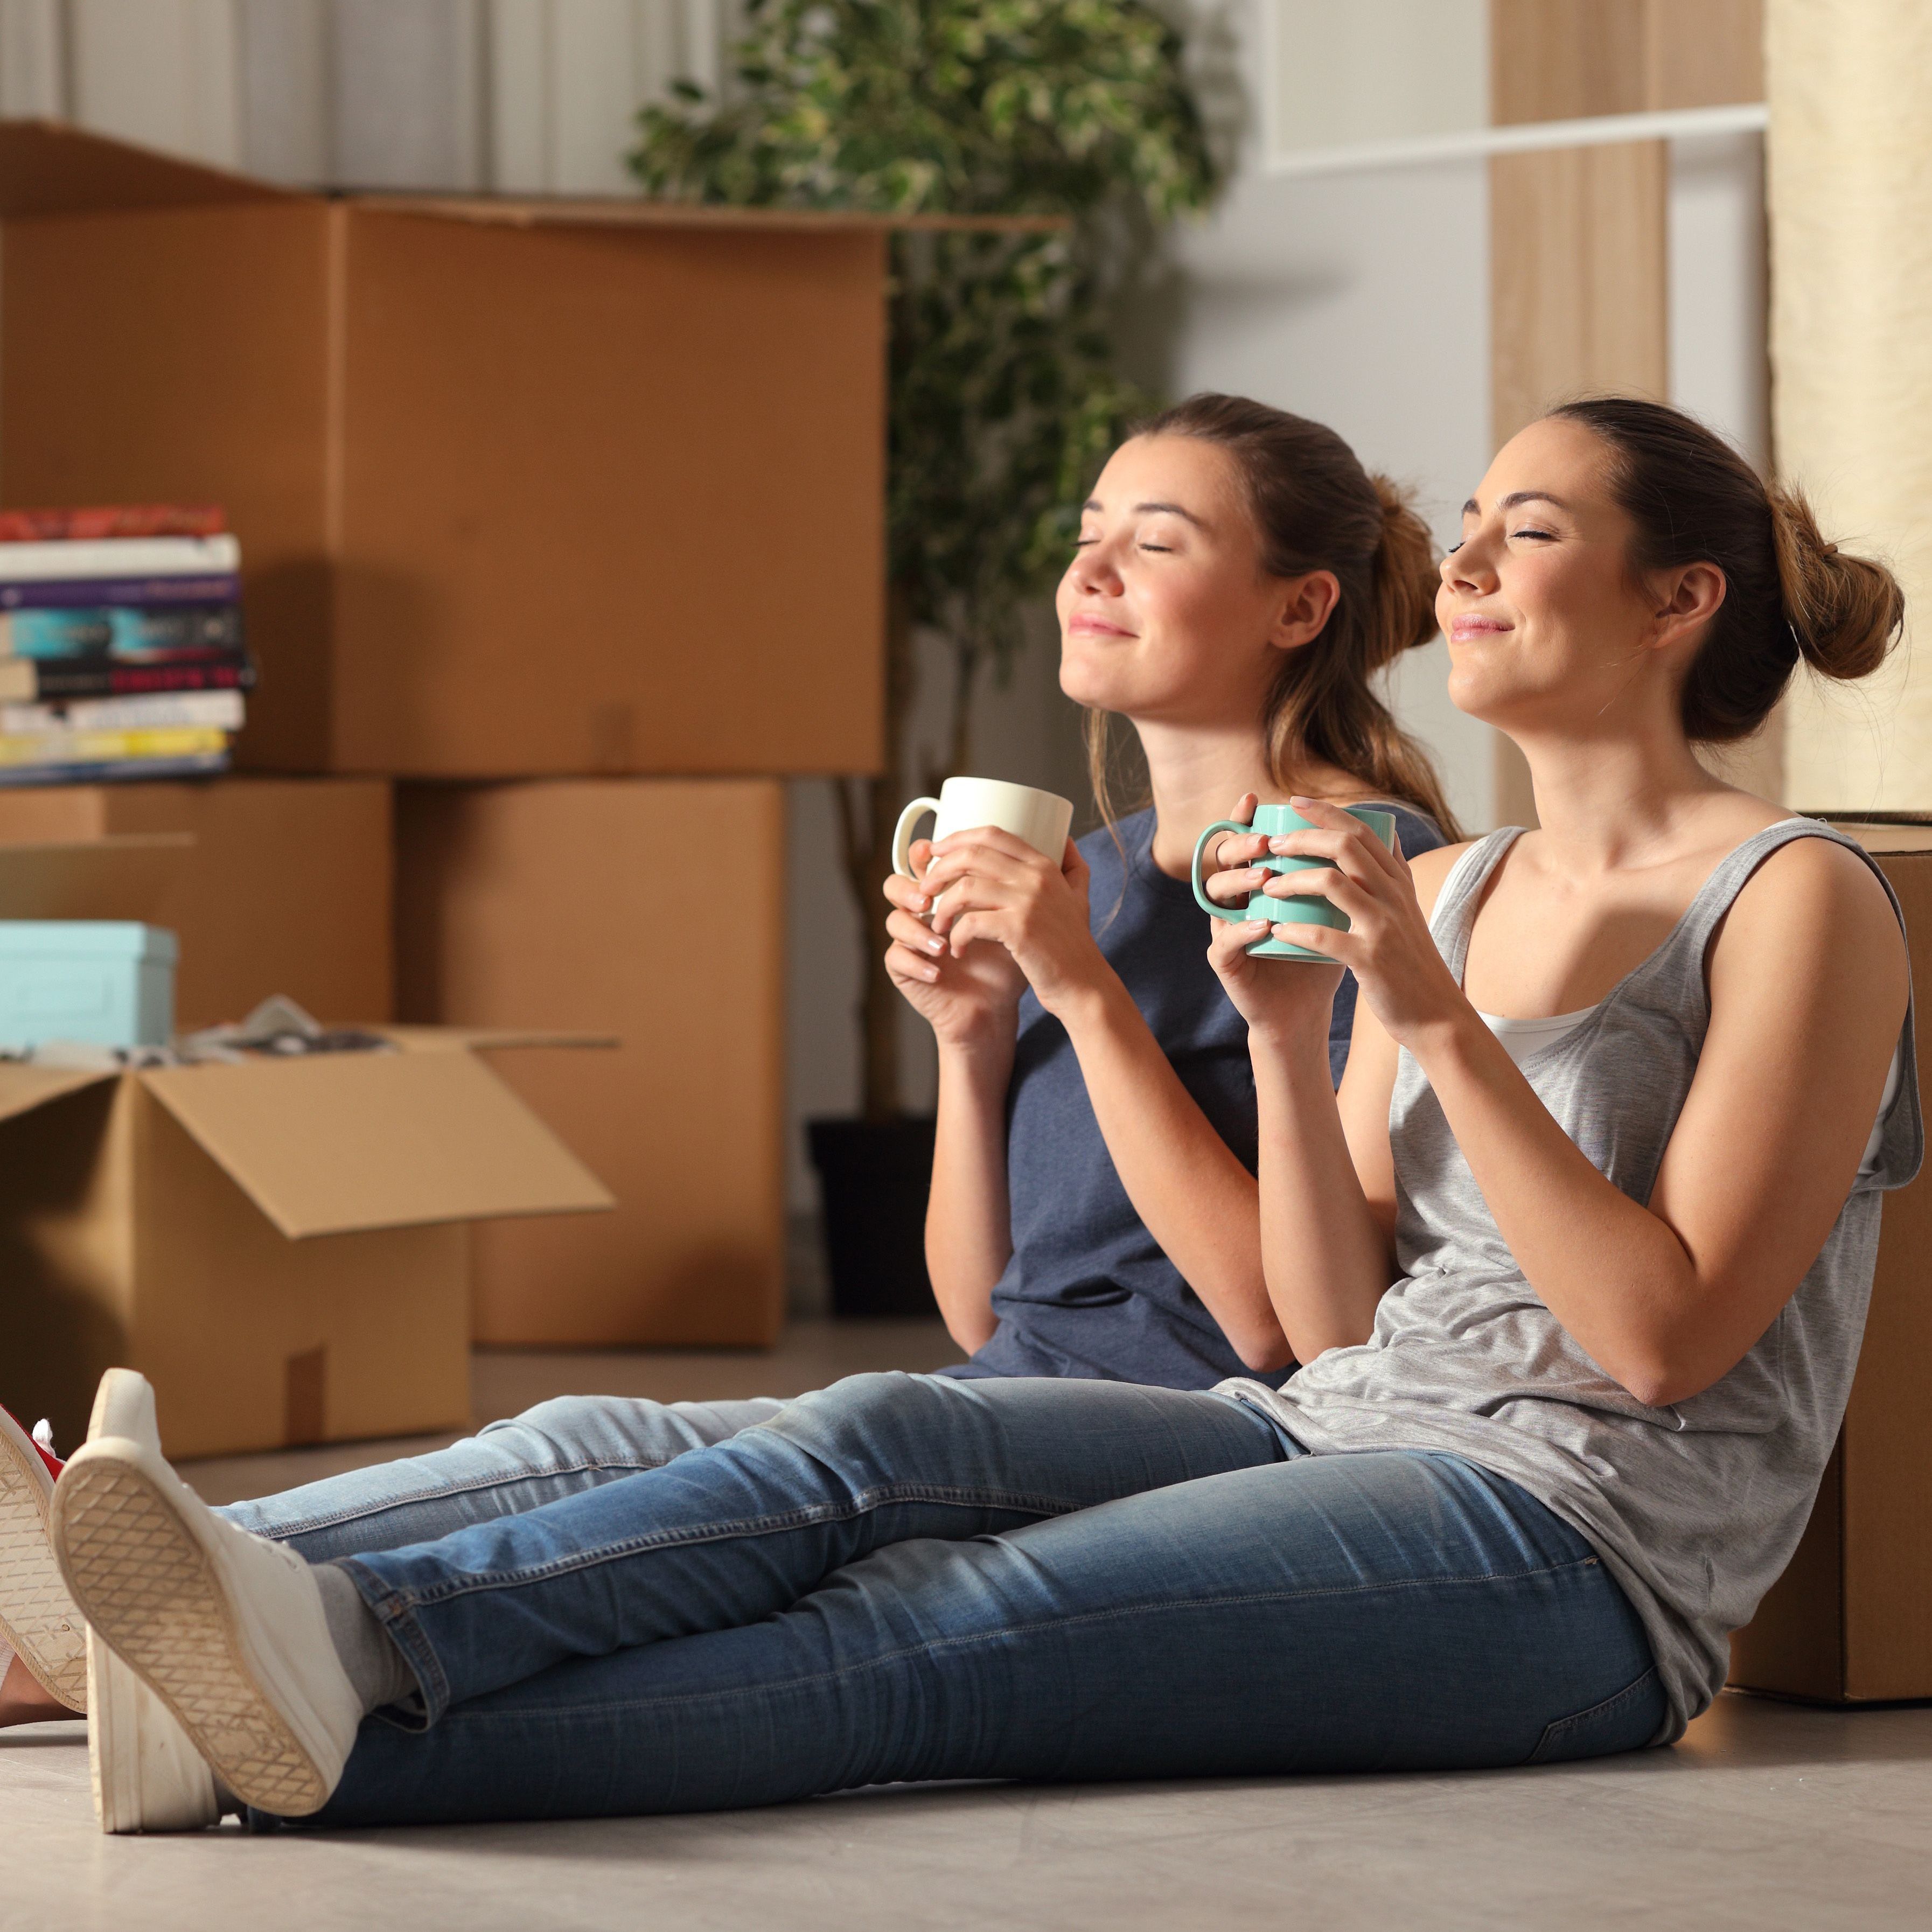 Erste eigene Wohnung – Tipps für Mieten und Umzug